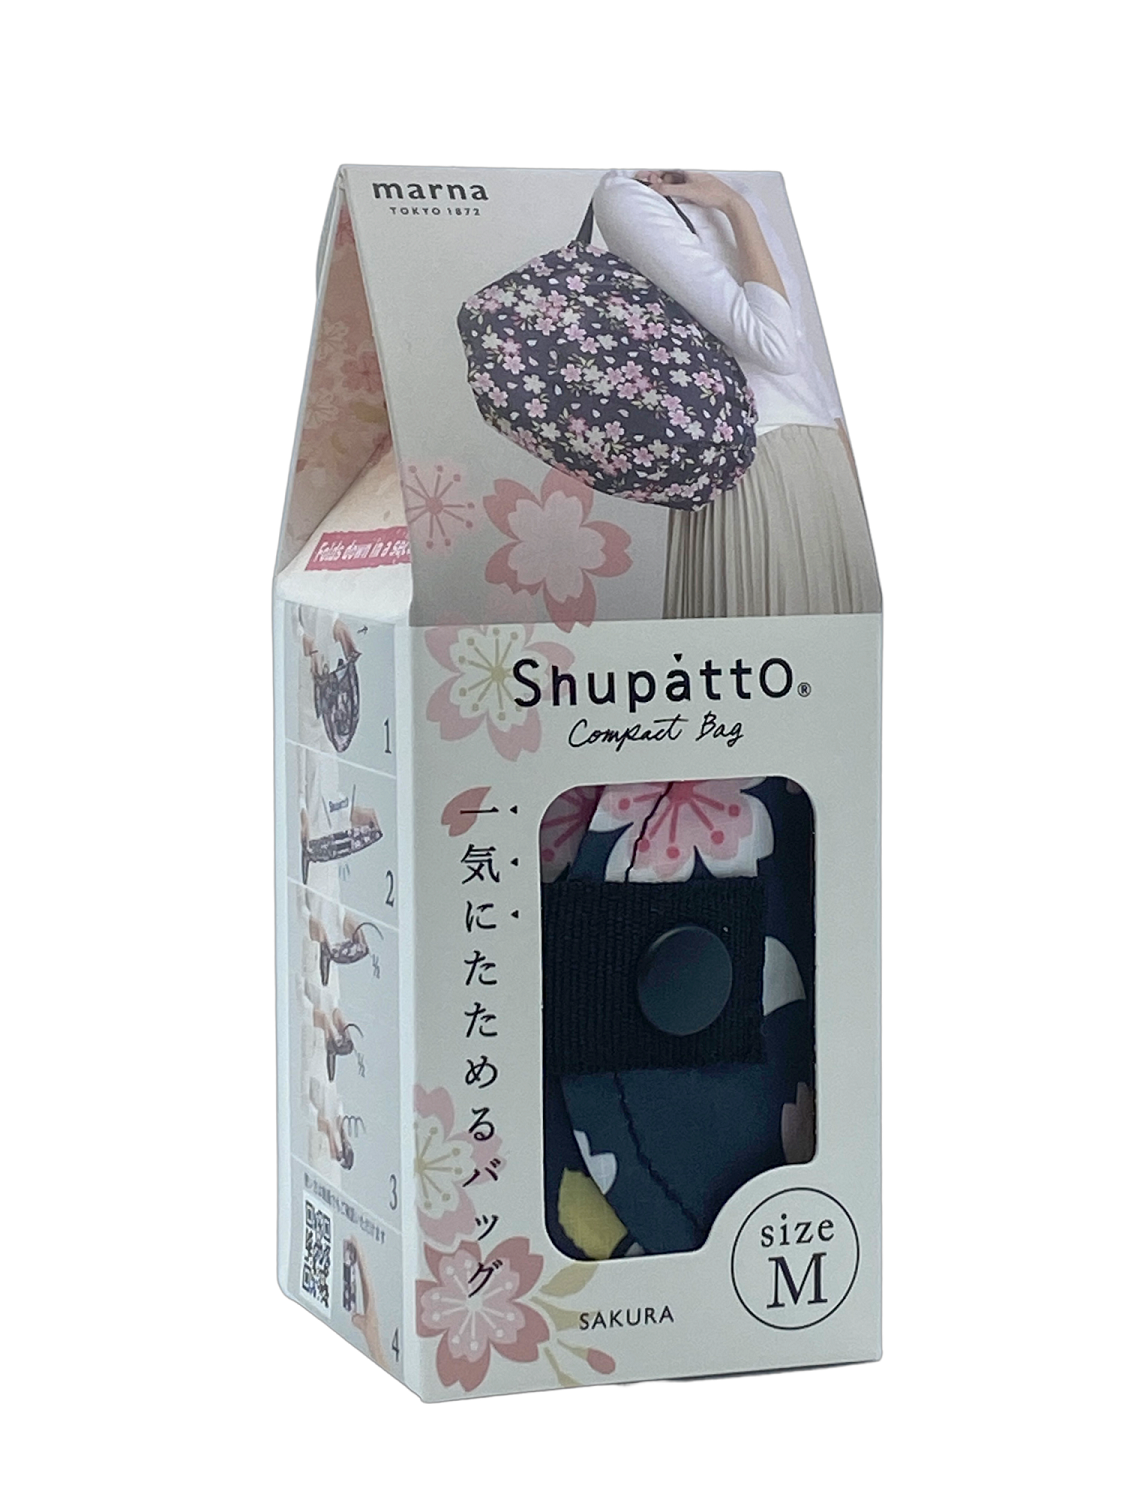 Shupatto faltbare Einkaufstasche Sakura in Verpackung